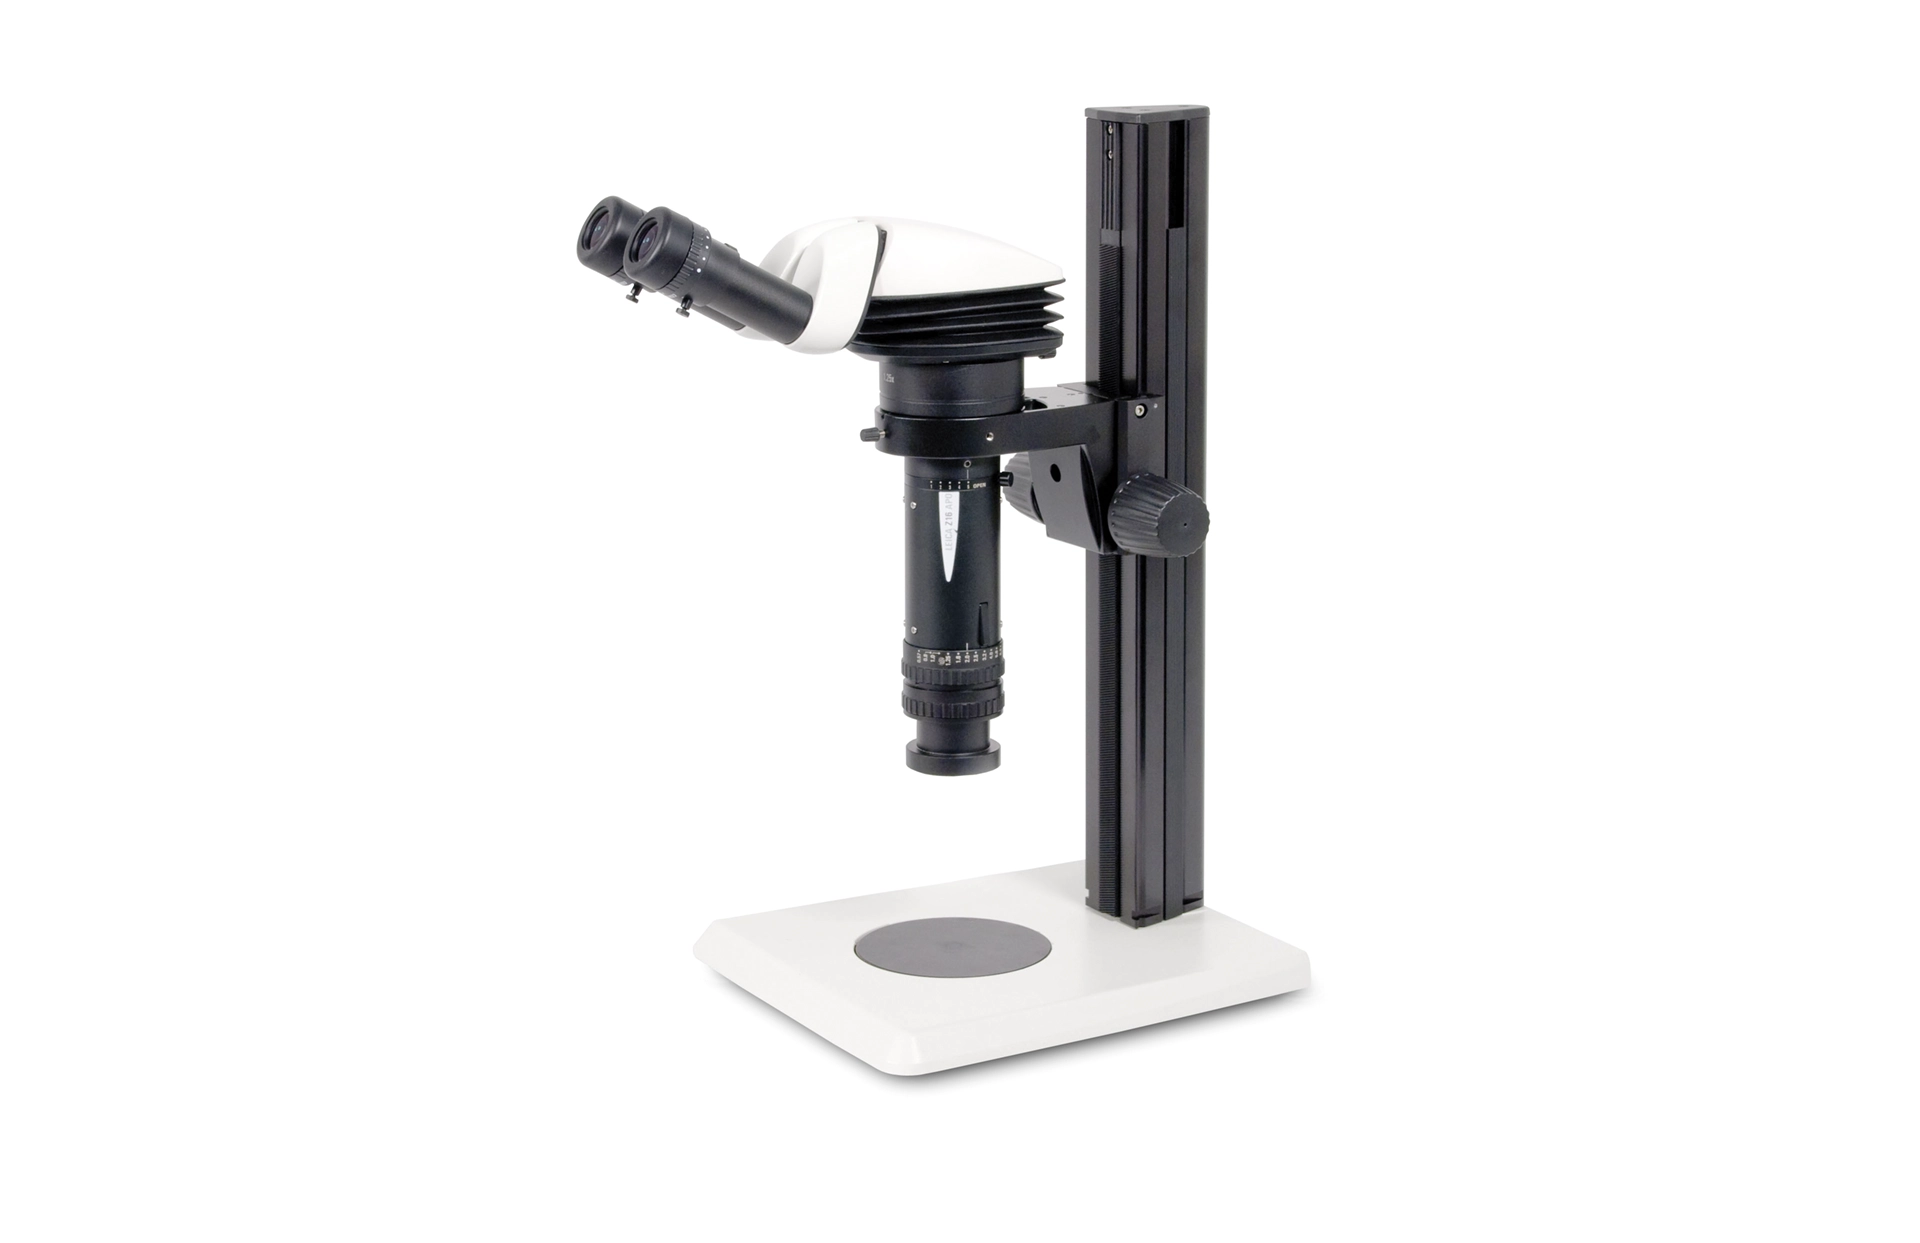 Leica Z16 APO Makroskop mit Binotubus, rechtsseitig